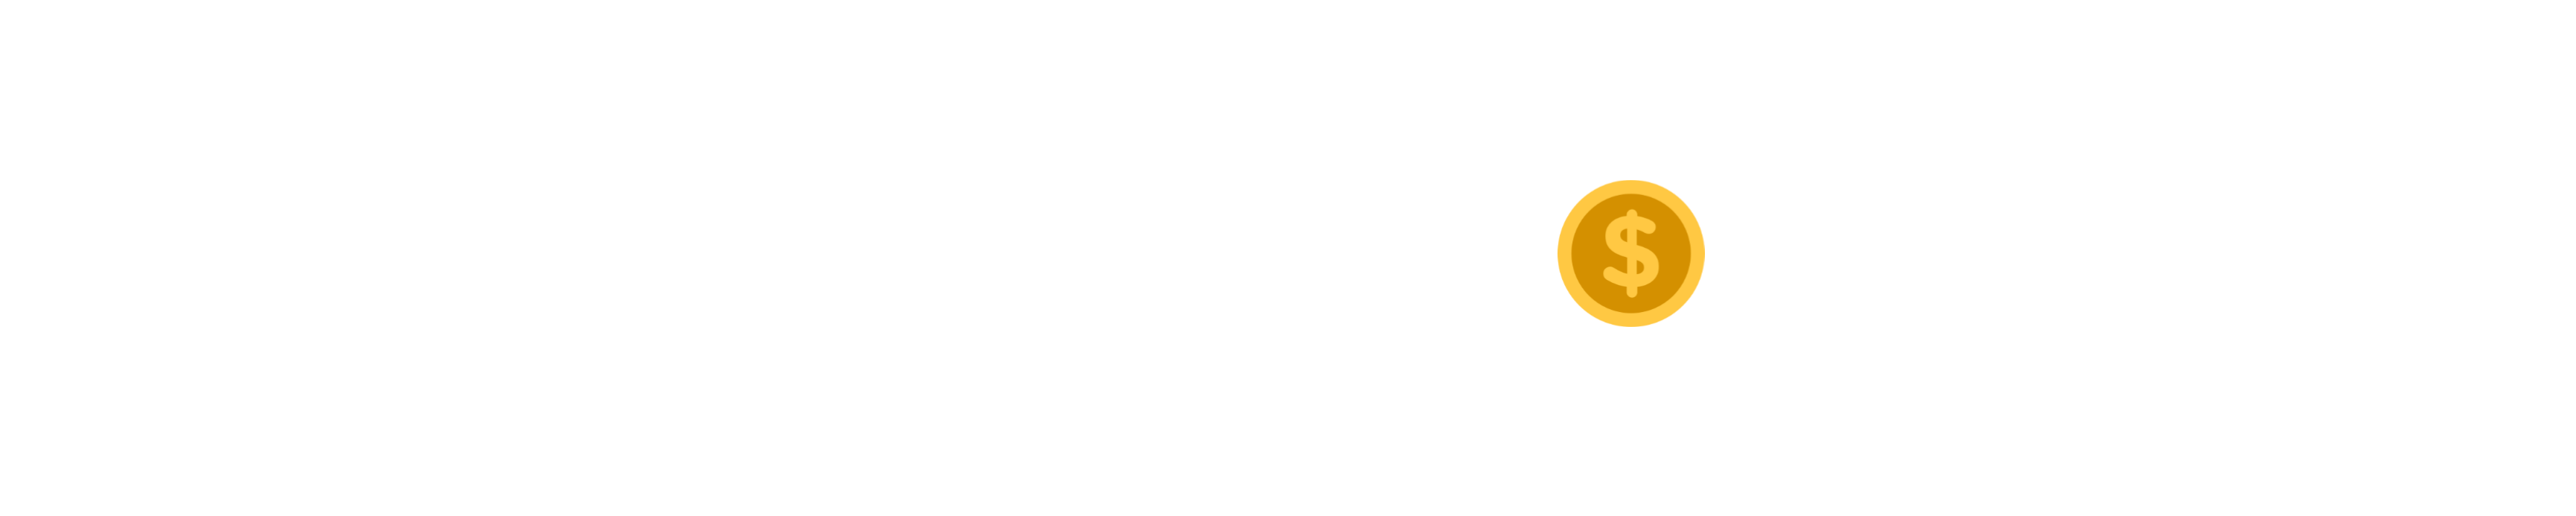 Digital Crypto Guide